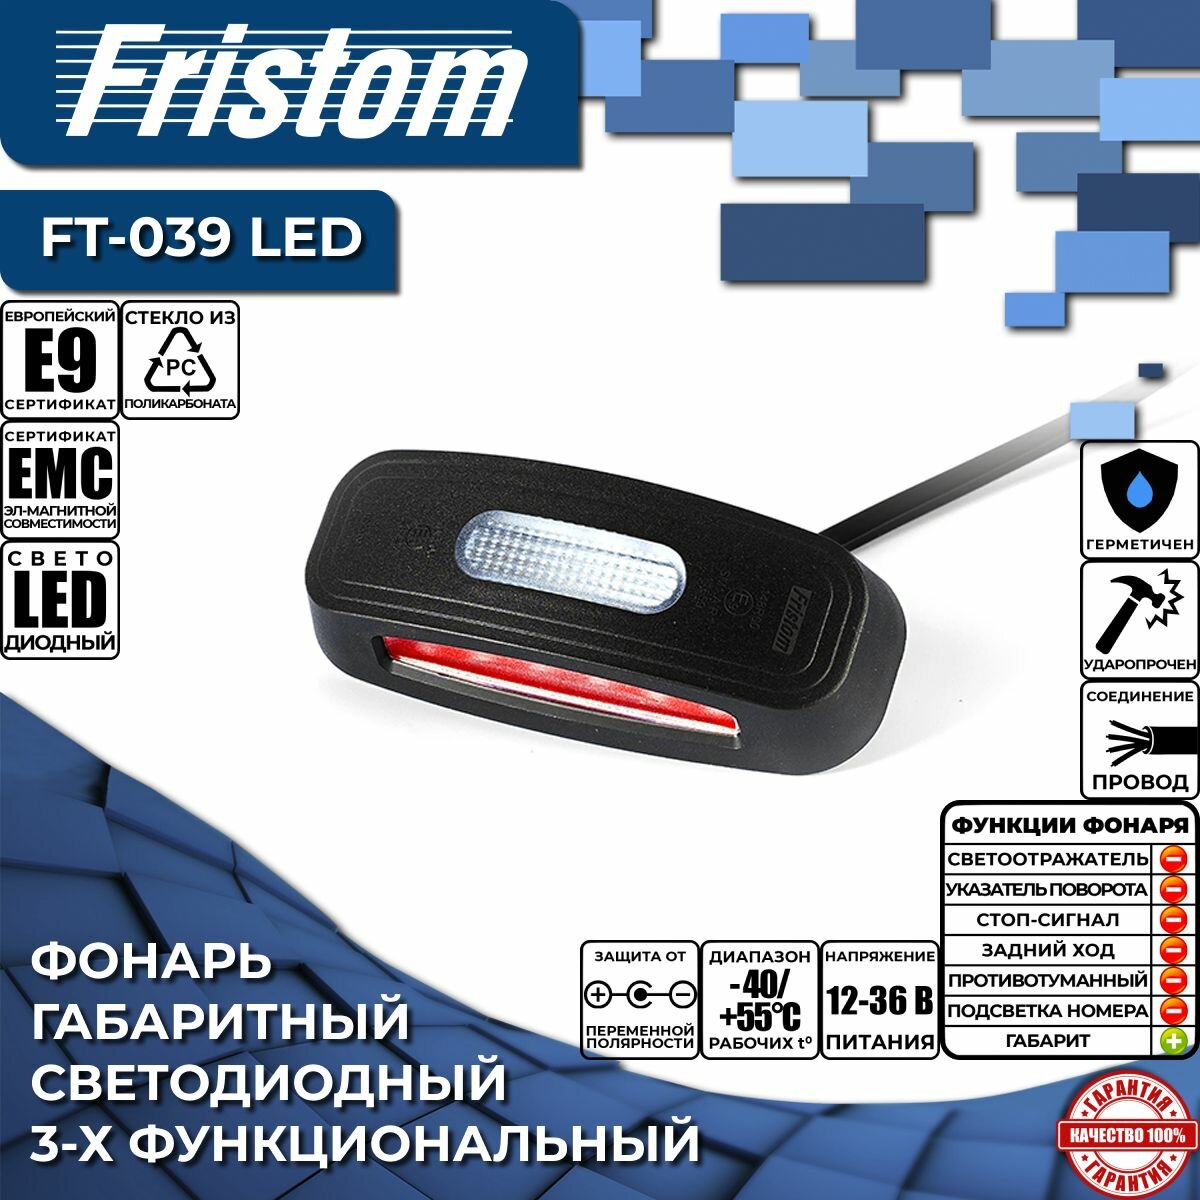 Фонарь габаритный светодиодный Fristom FT-039 LED 3-функциональный, 3-цветный, с проводом 0.5 м. (1 шт.)